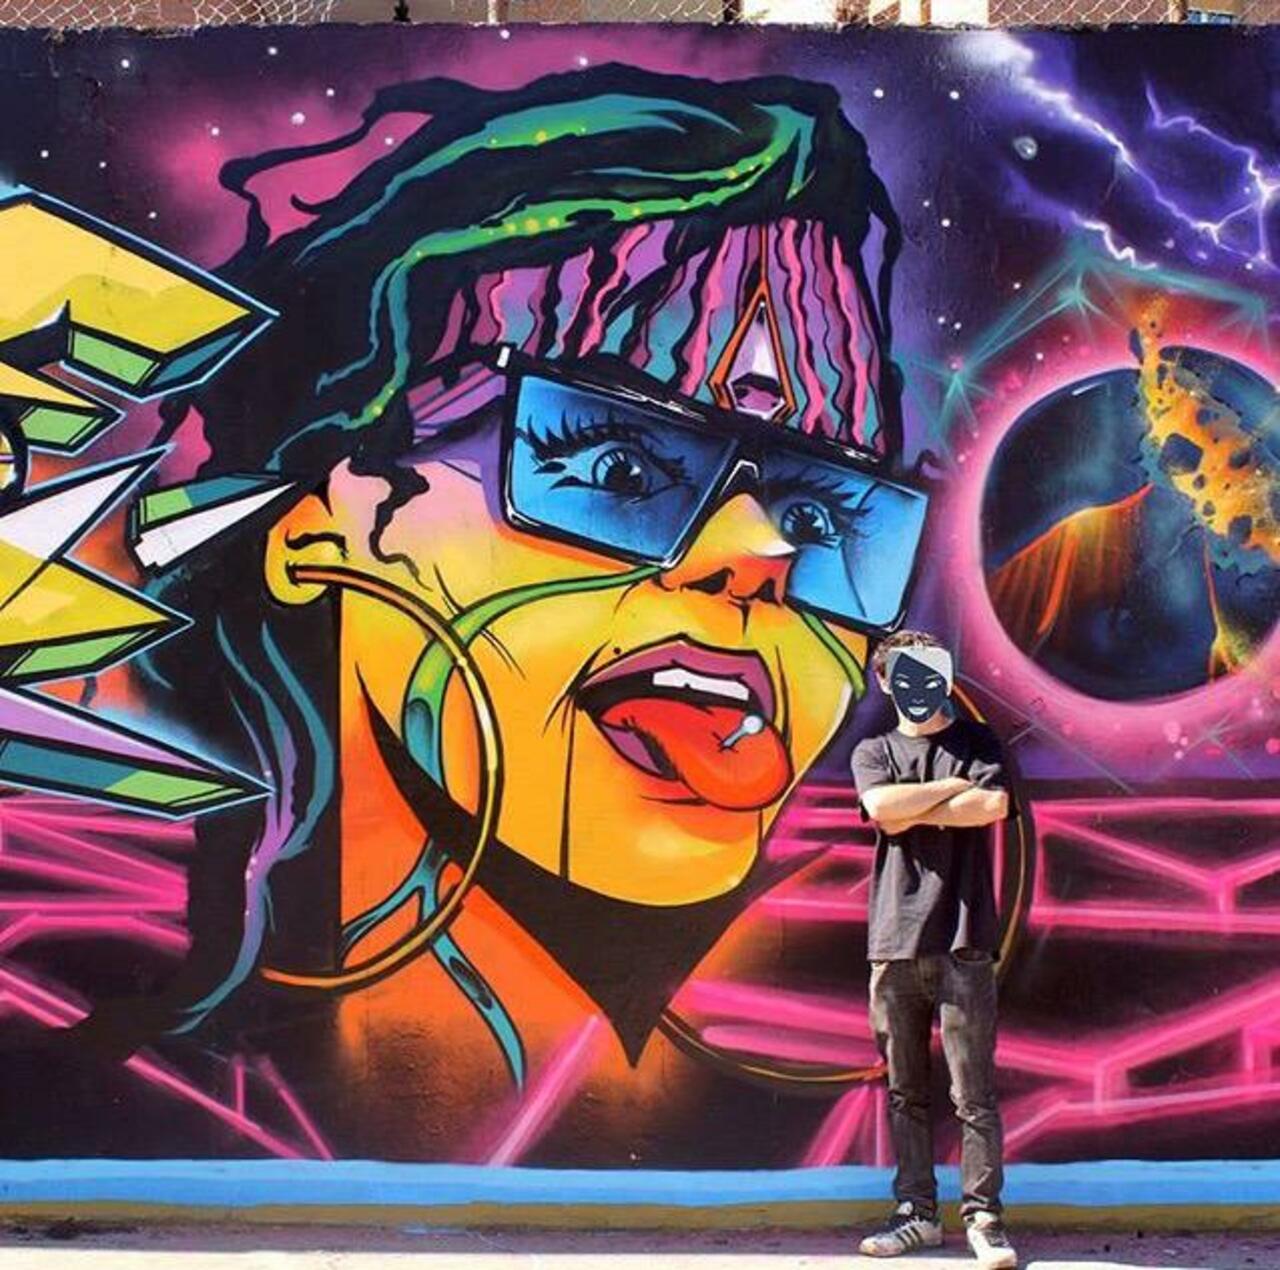 Brilliant new Street Art by the artist Jaycaes

#art #graffiti #mural #streetart http://t.co/kjFgszOKT5